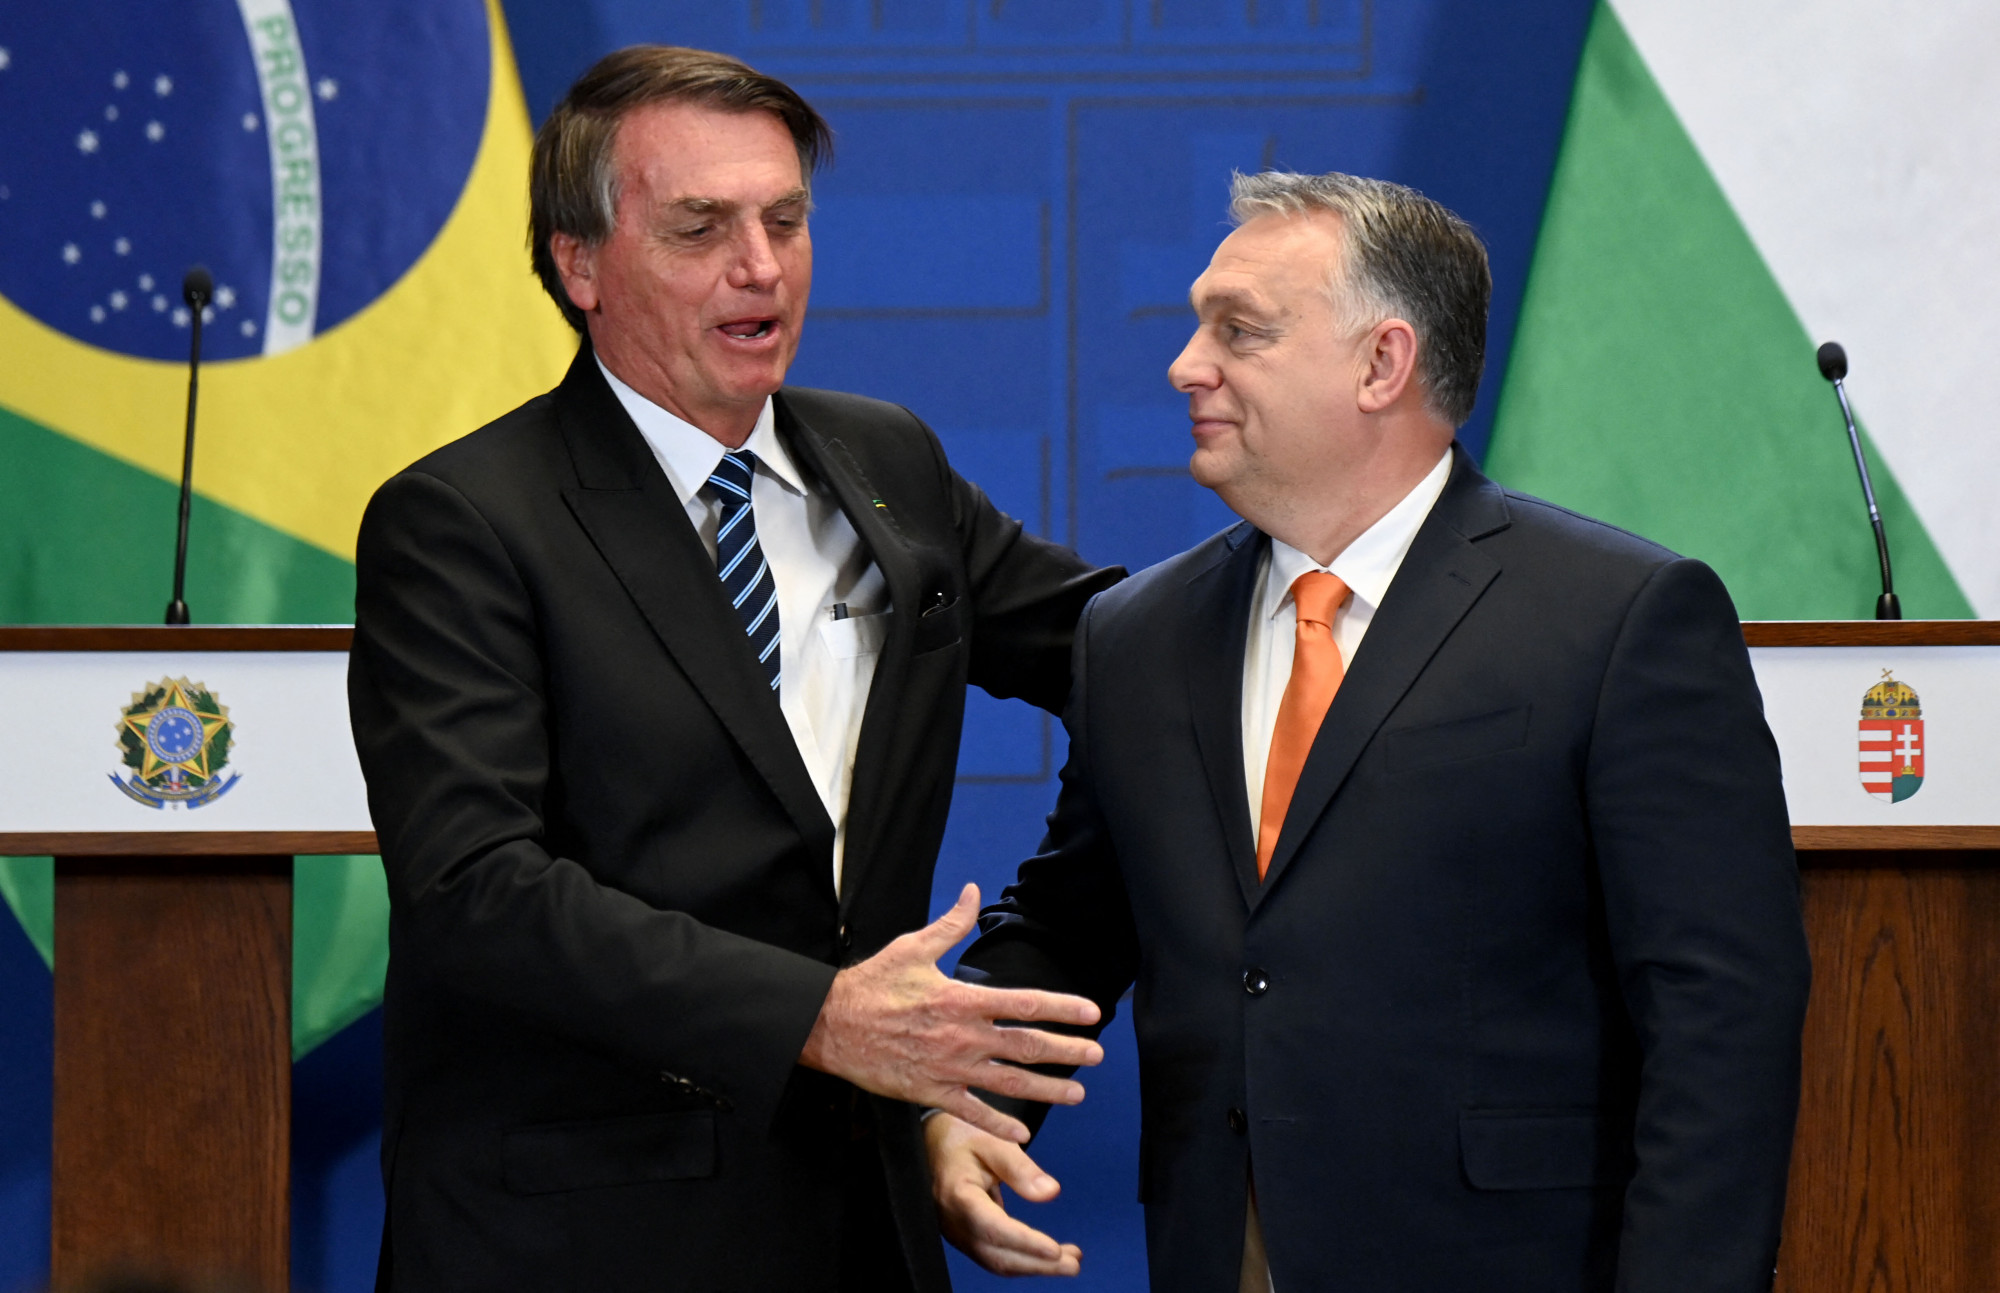 2022-ben Budapesten találkoztak. Bolsonaro azóta távozott a hatalomból.